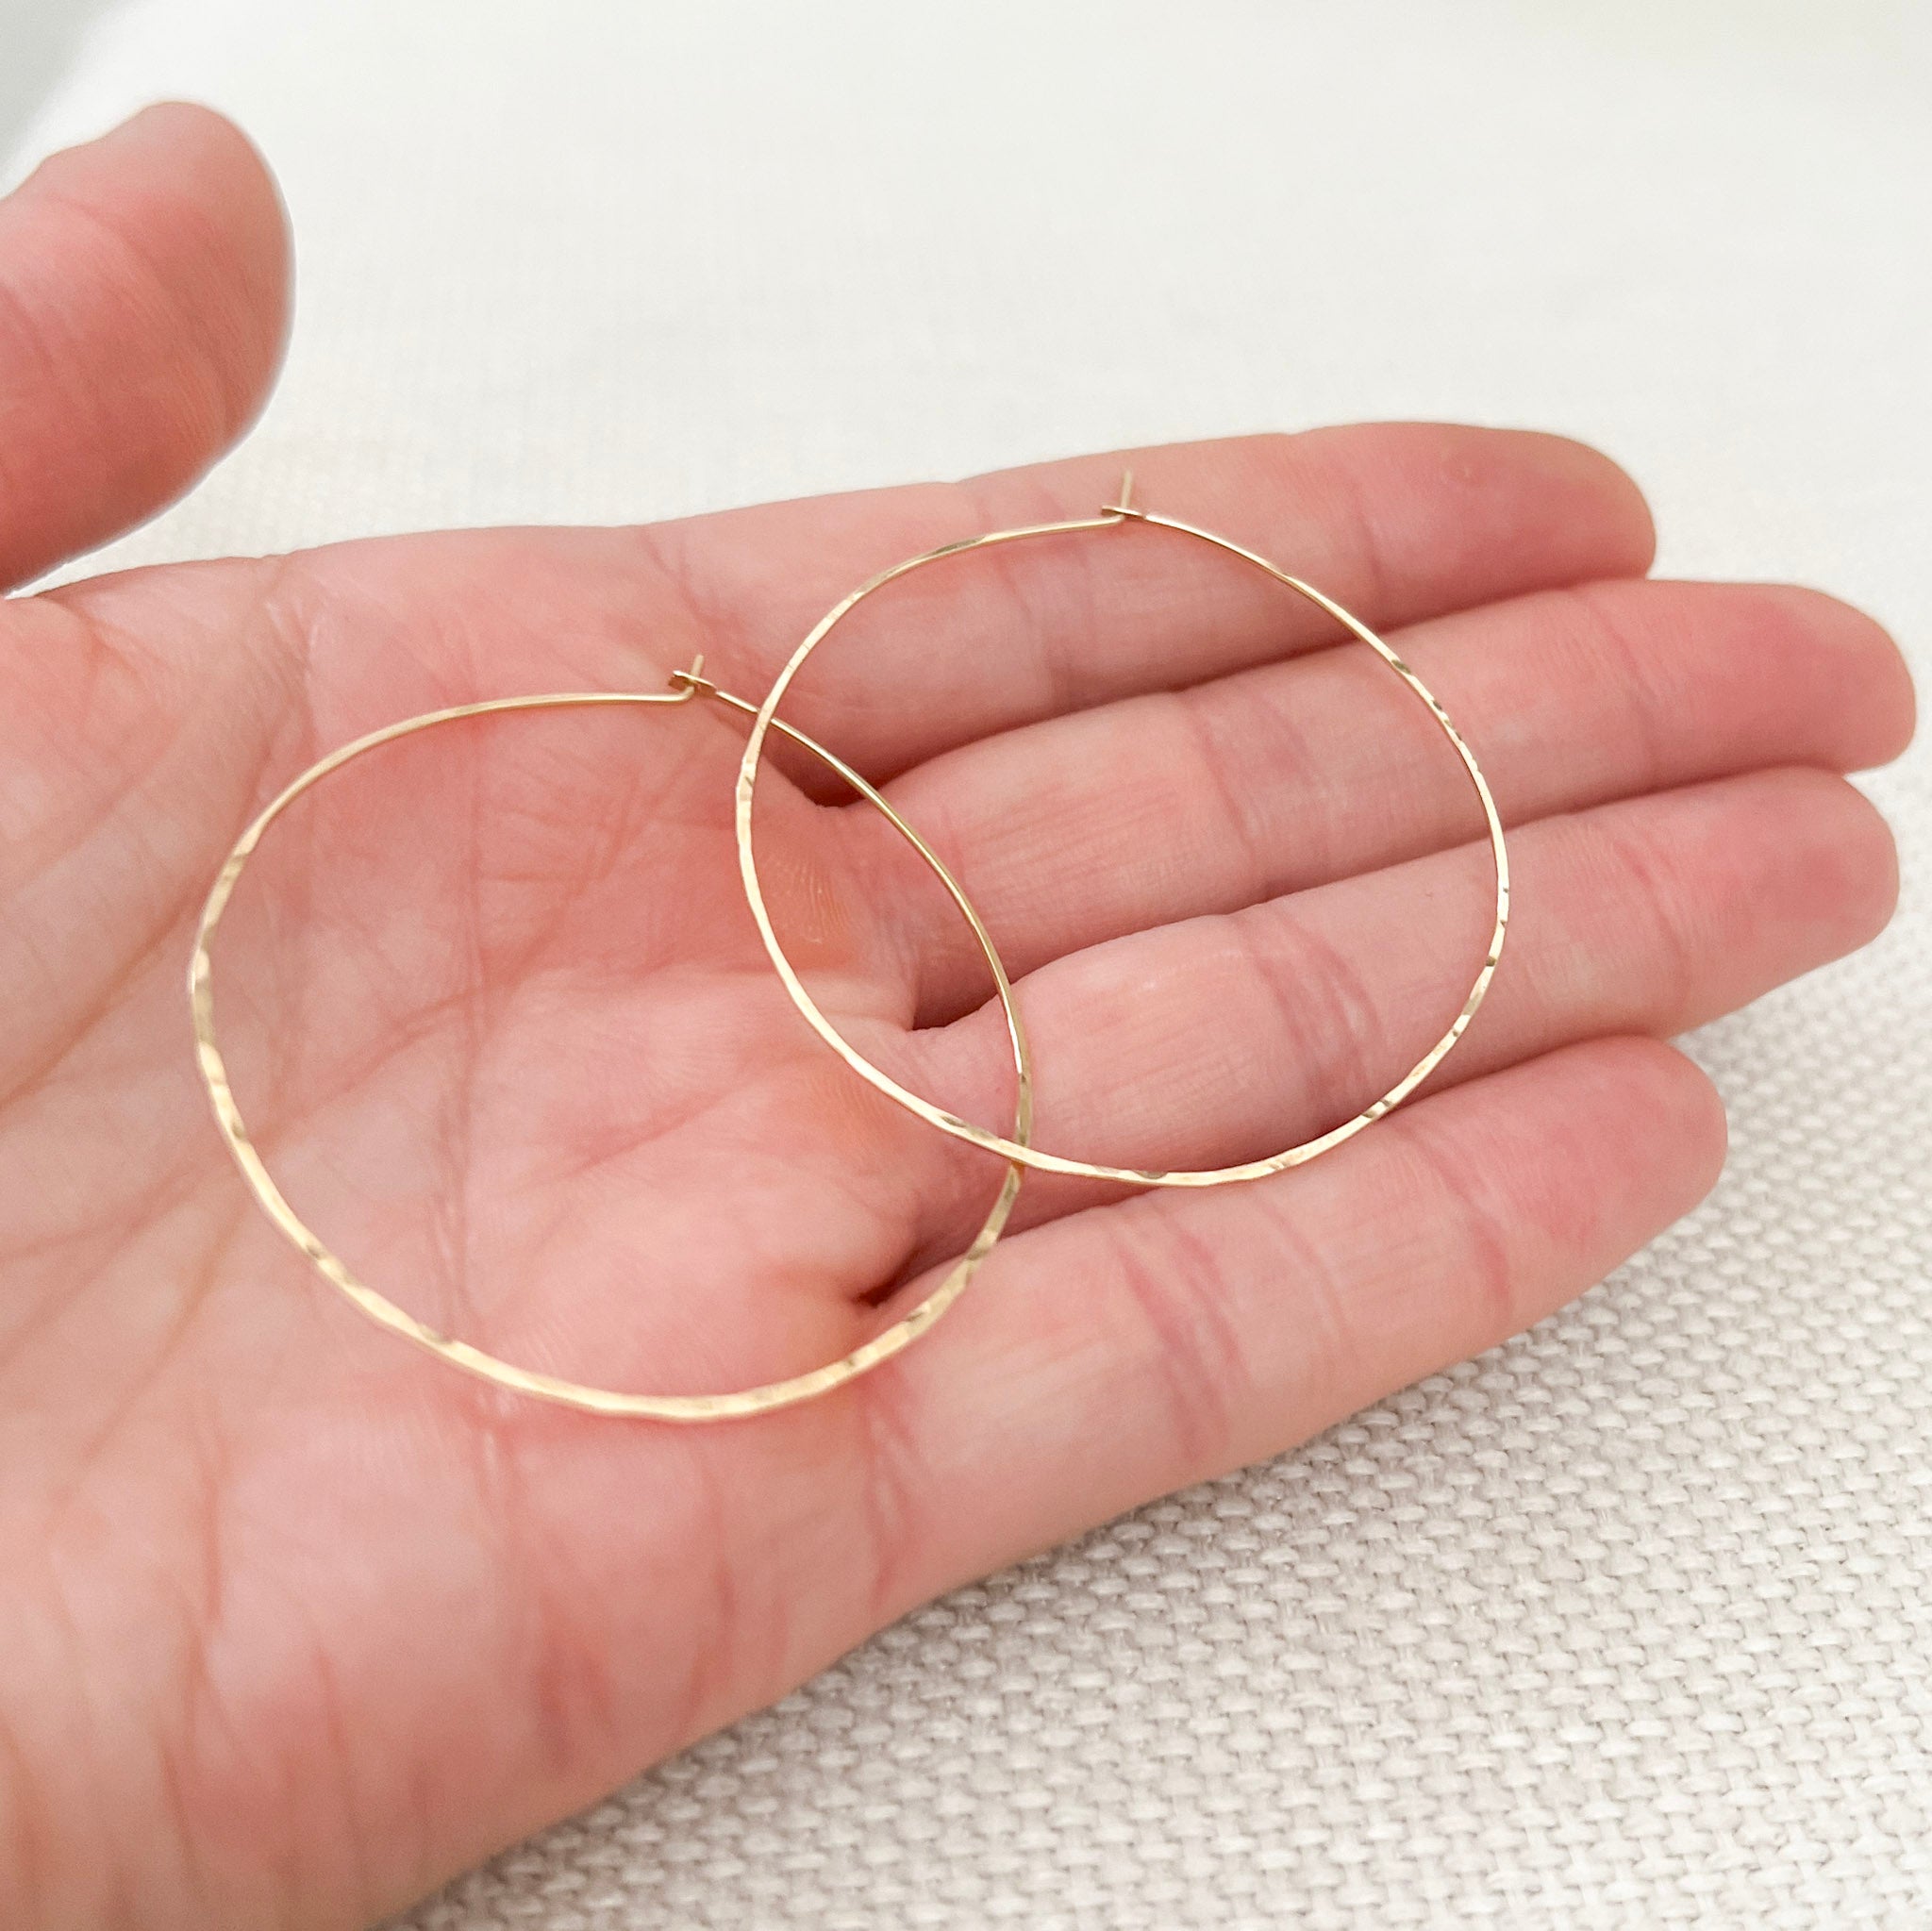 Large, Thin Hammered Hoop - Sterling Silver or Gold Filled - Sela+Sage - Hoop Earrings